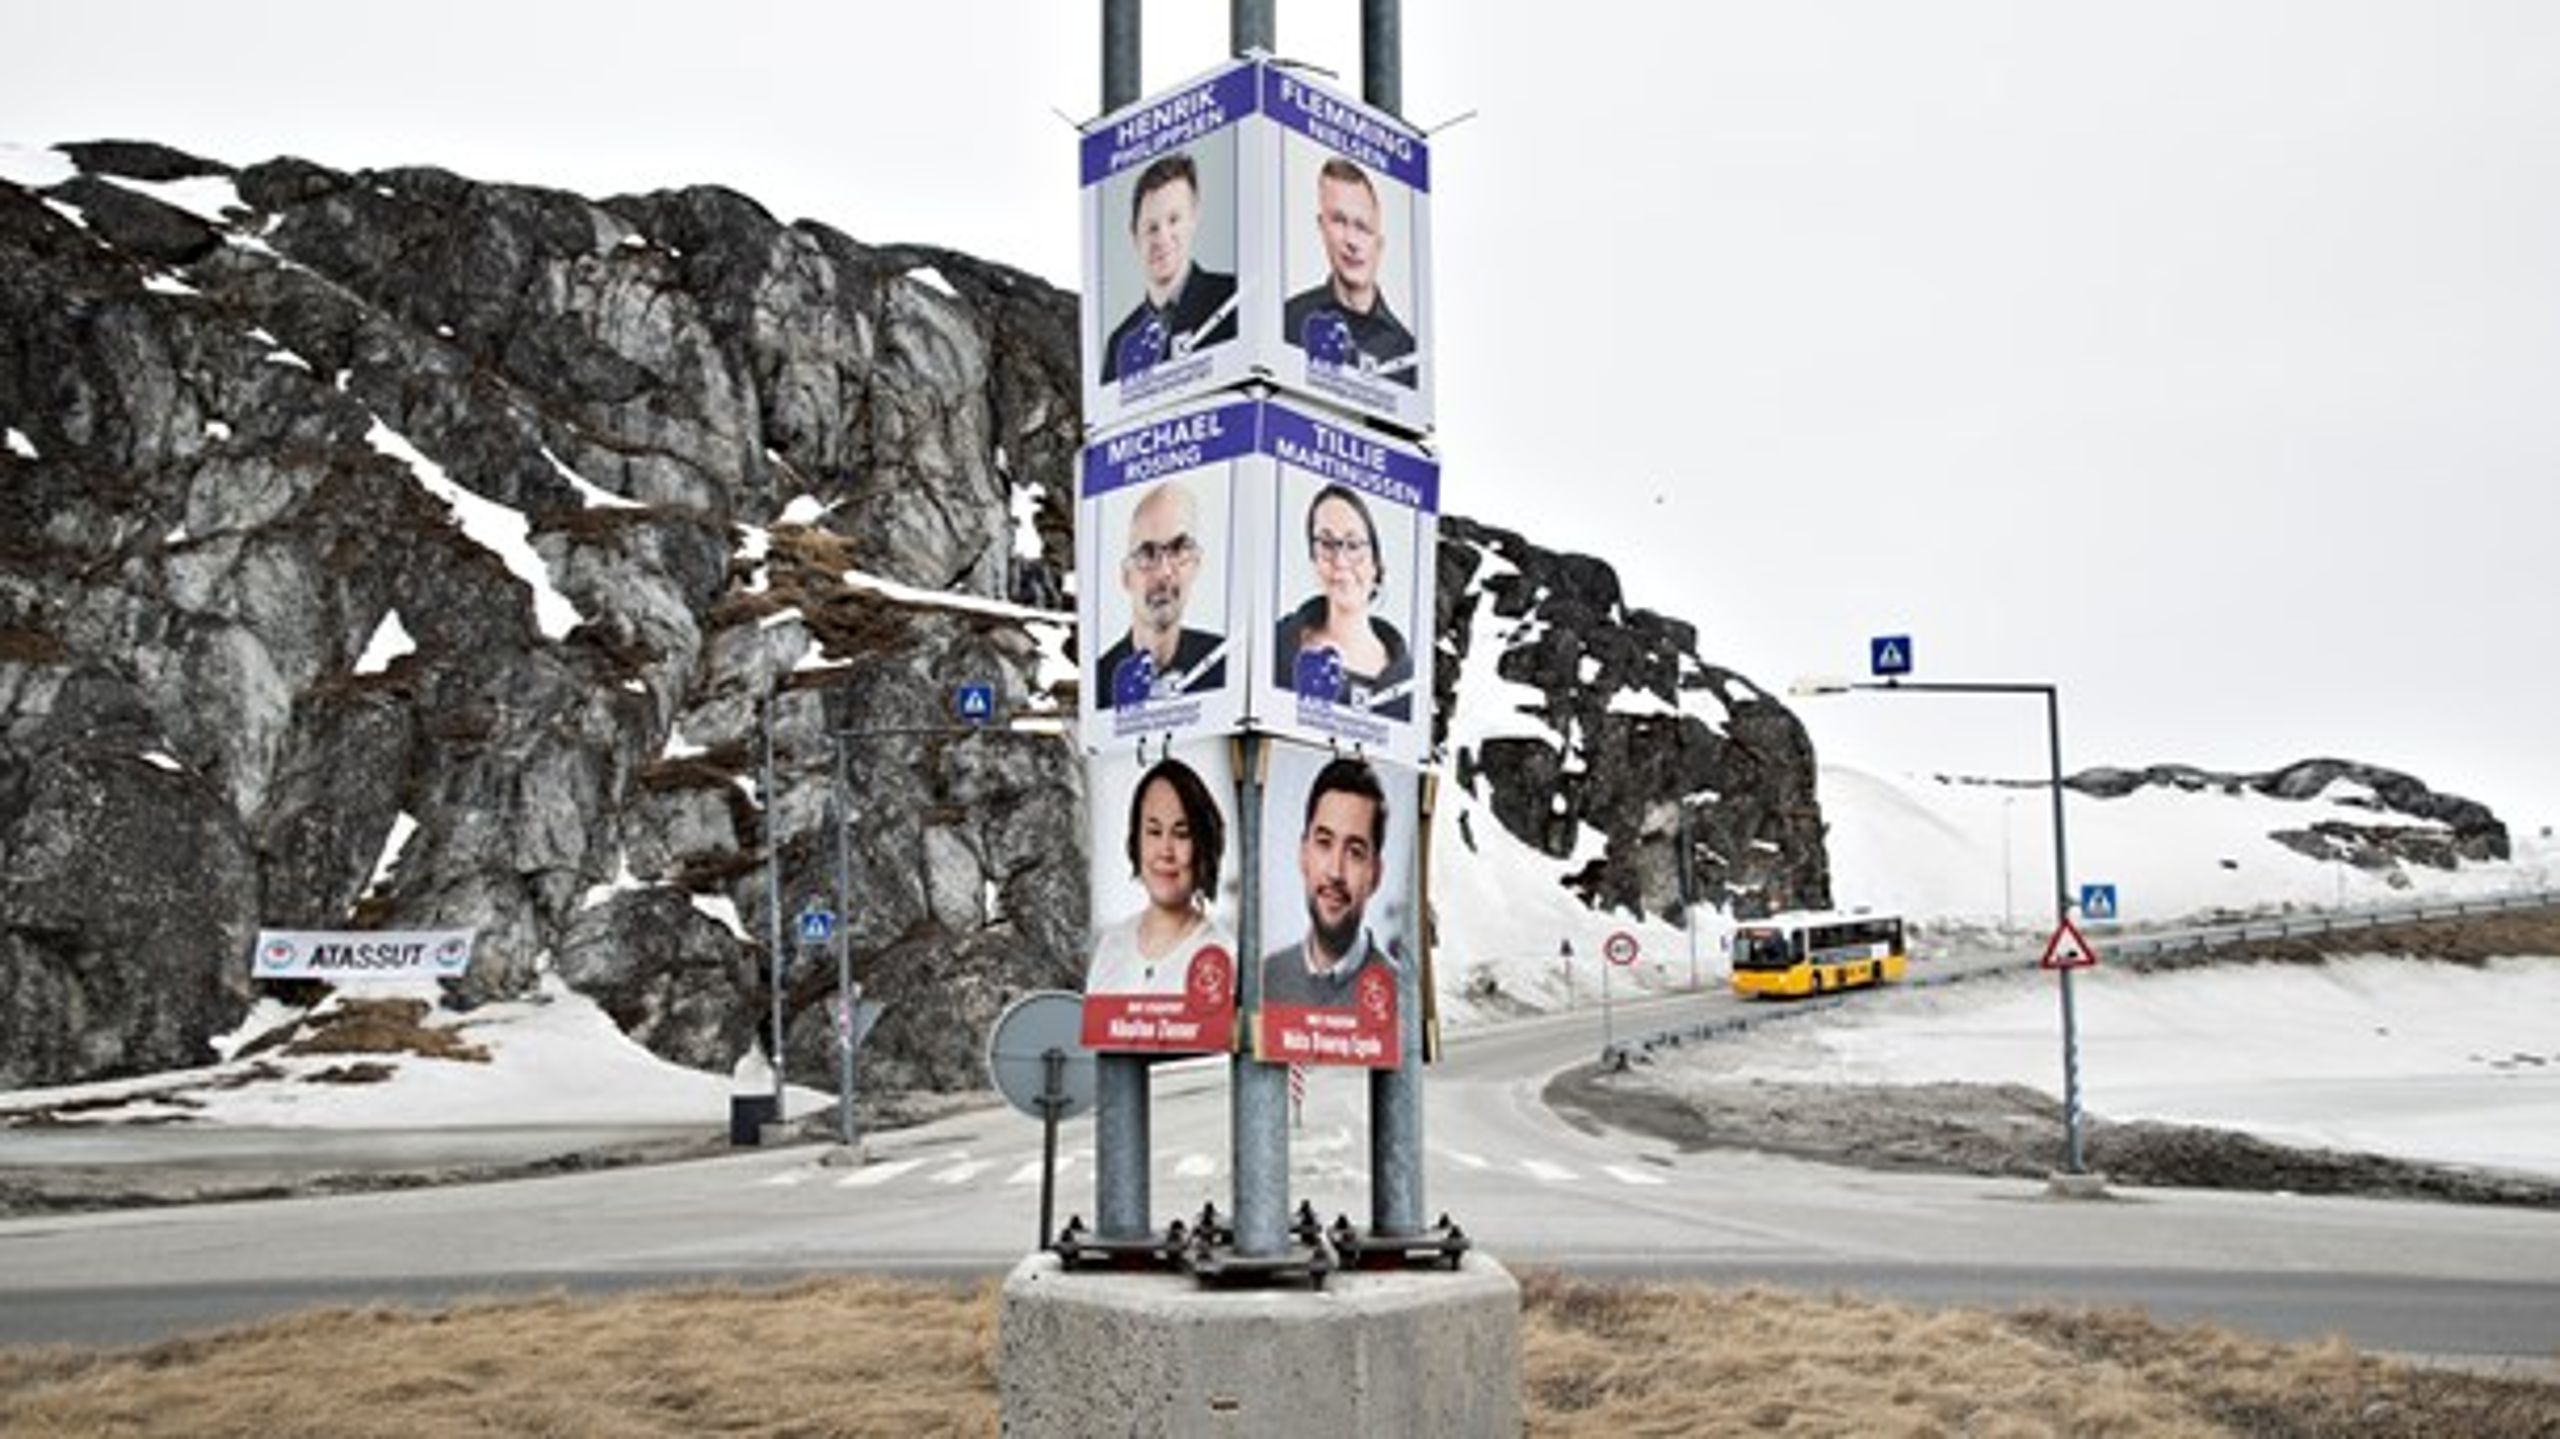 Aaja Chemnitz Larsen, folketingsmedlem for&nbsp;Inuit Ataqatigiit, tager temperaturen på Grønlands vej mod selvstændighed i forbindelse med det forestående grønlandske valg.